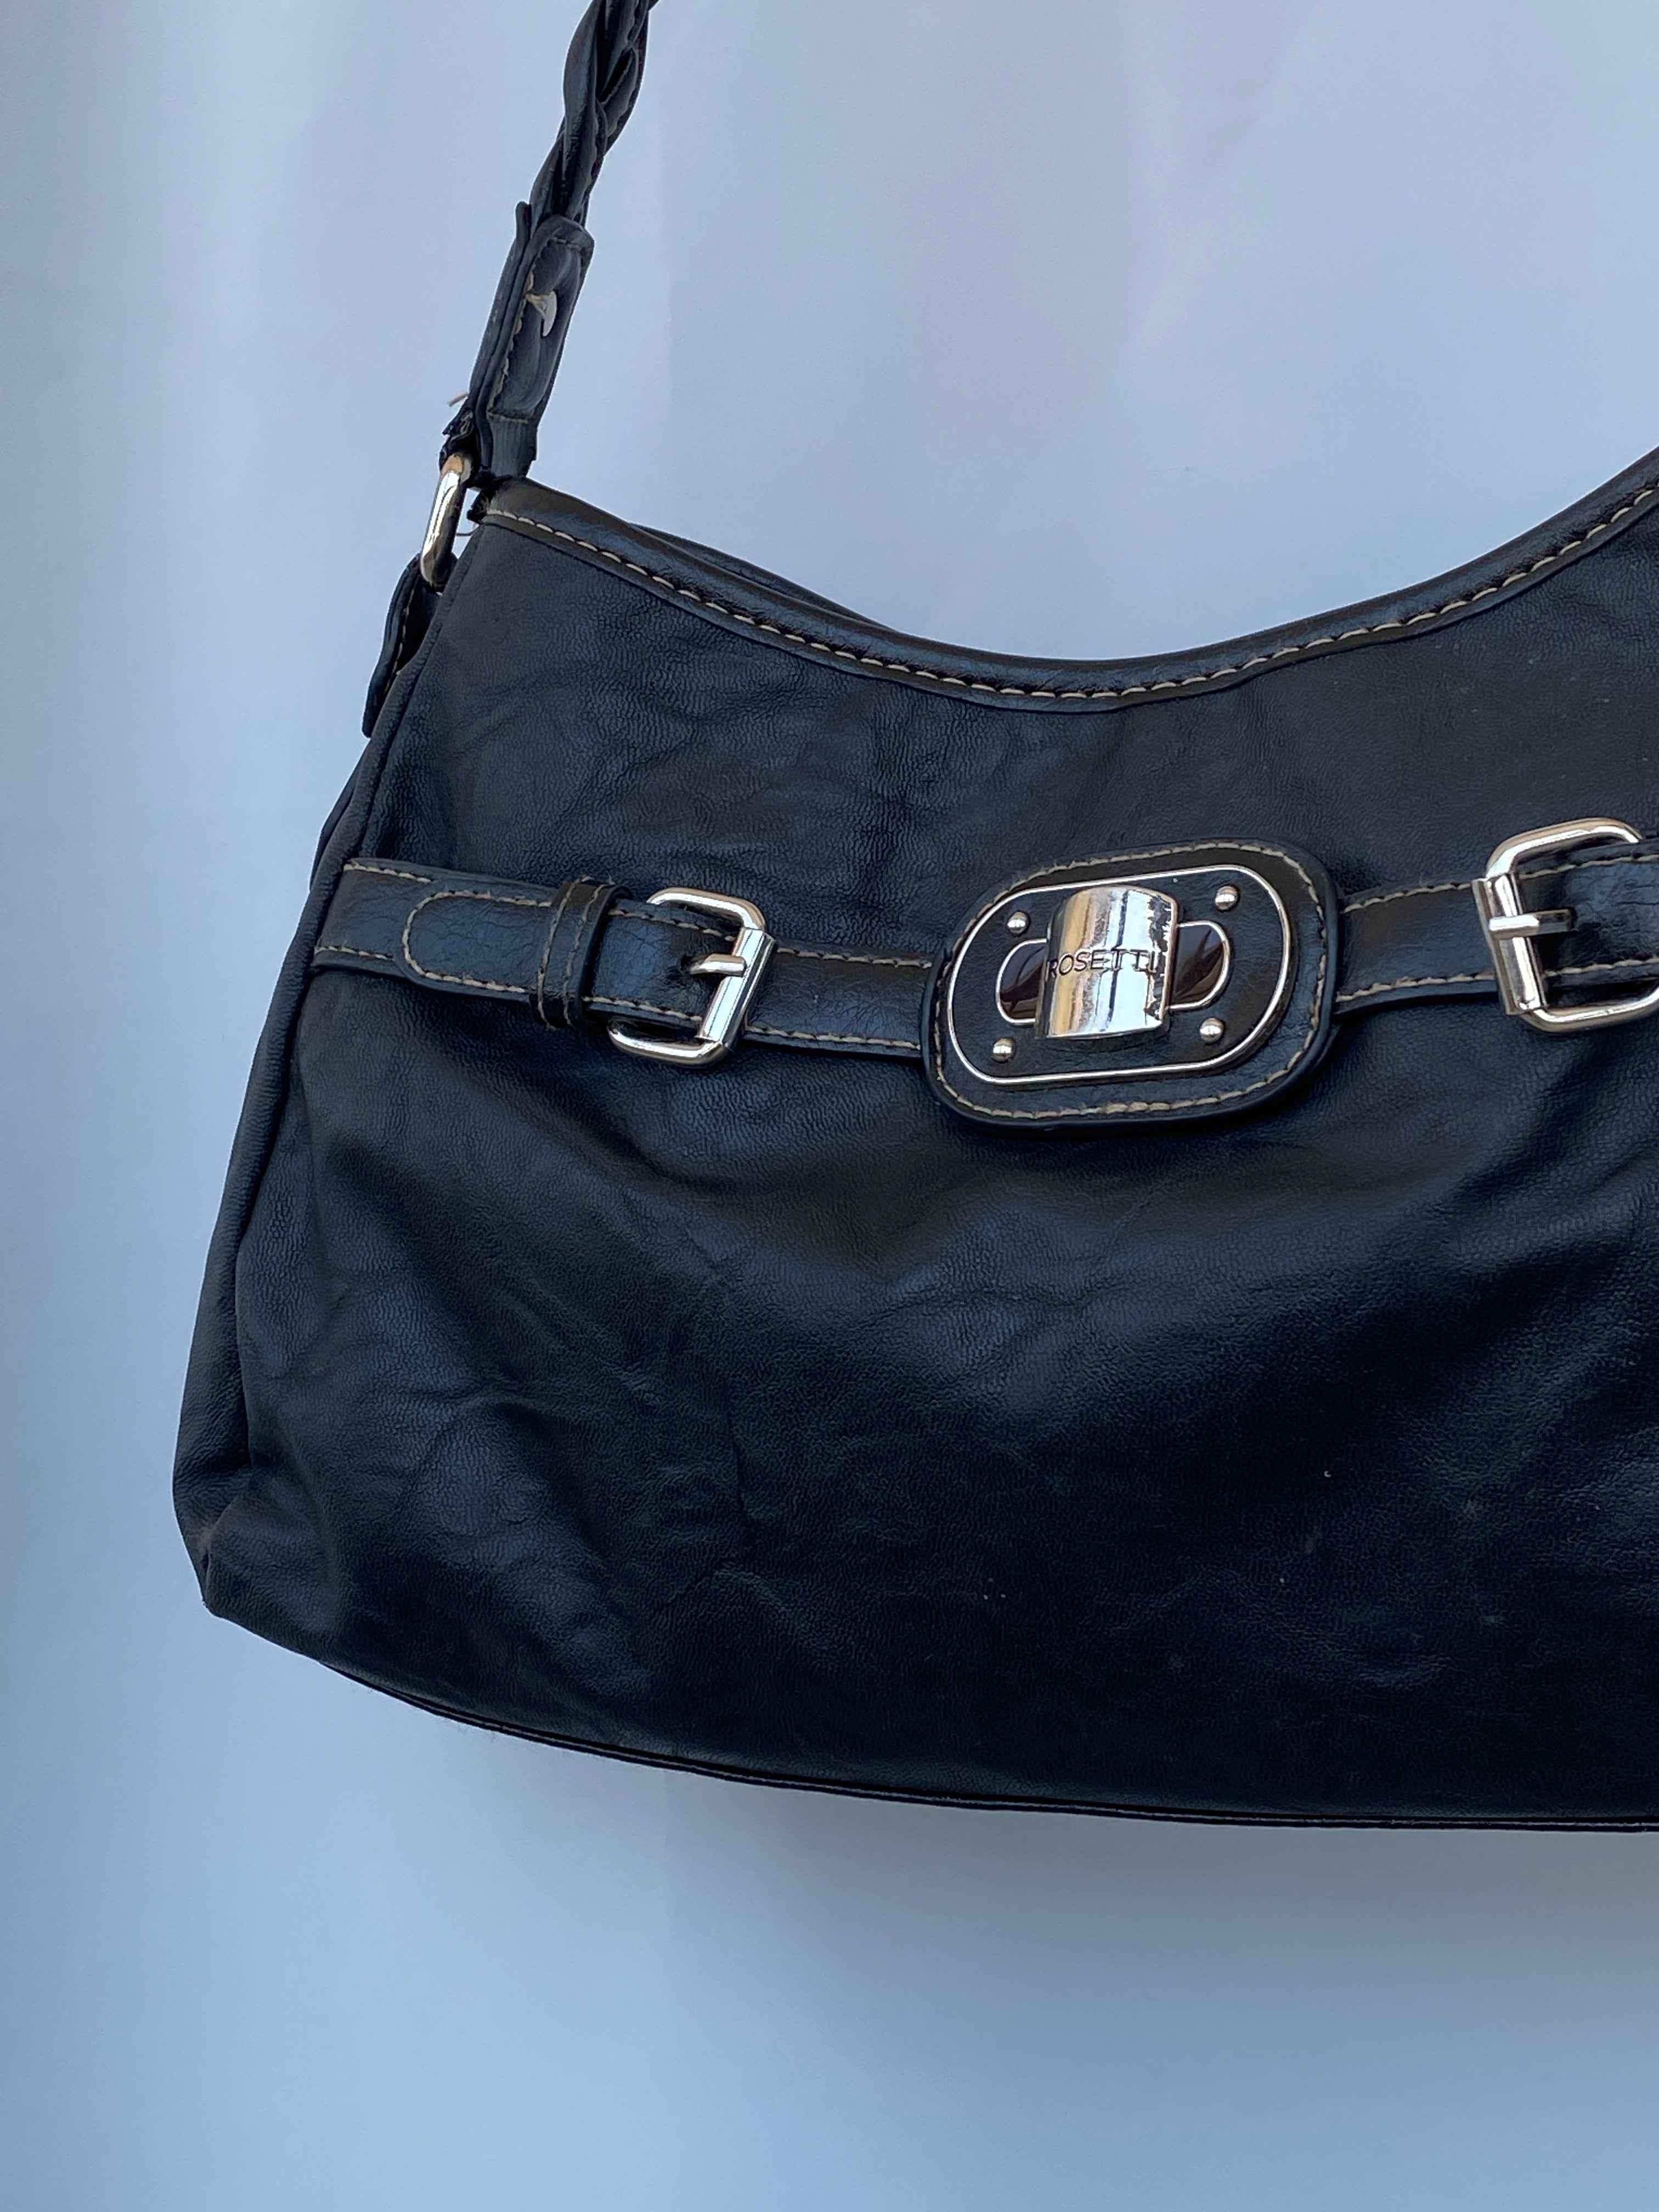 Rosetti Black Handbag Purse Mini Shopper Bag | eBay